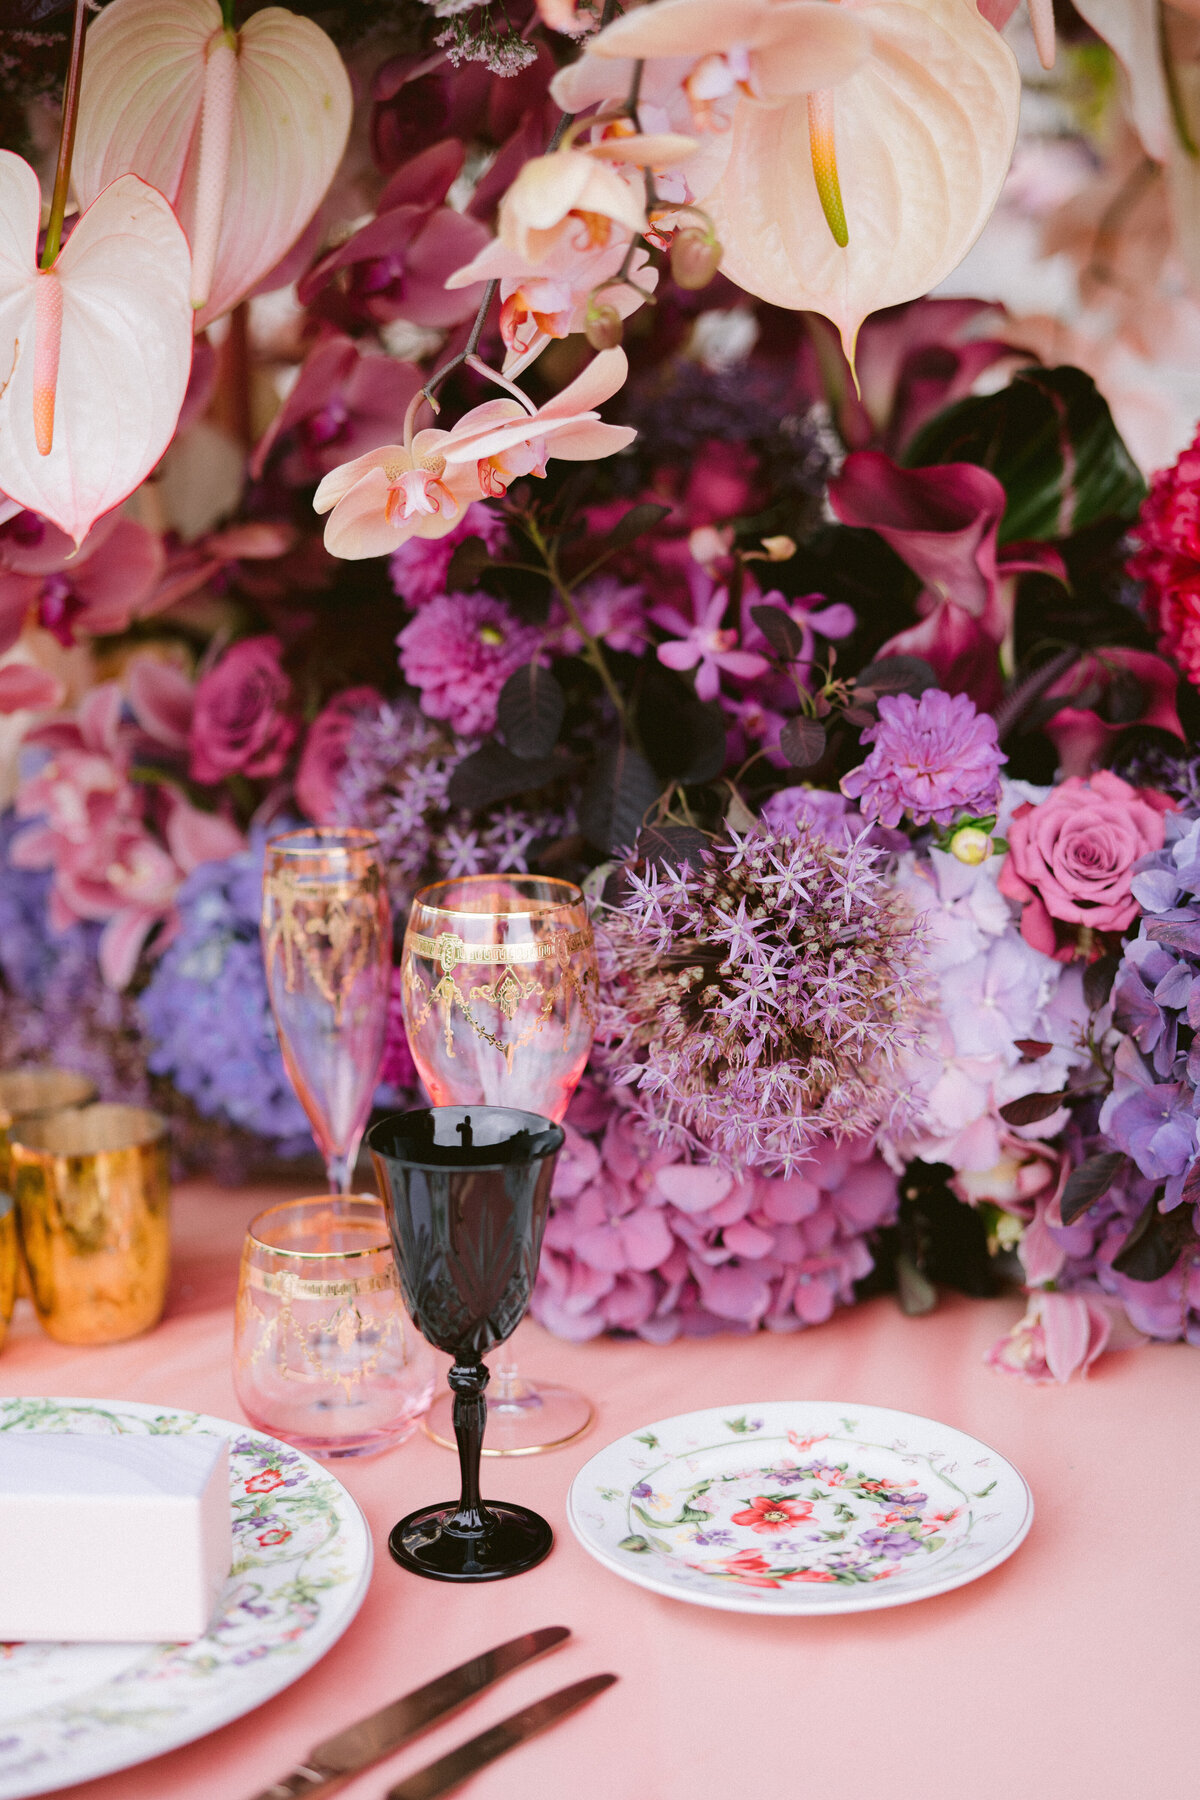 decoration floral centre de tables luxe wedding designer Paris France - Copie